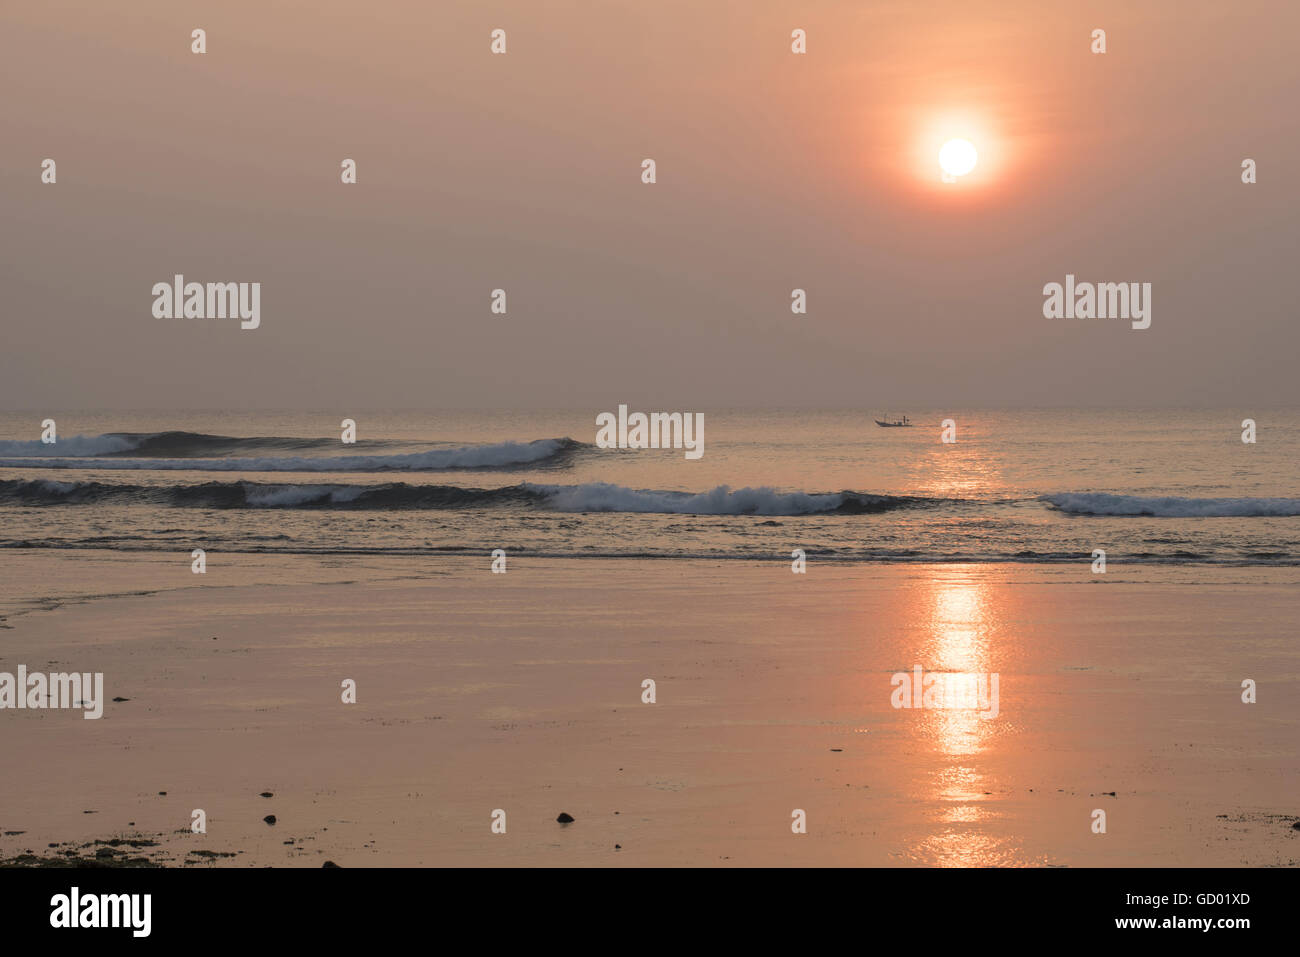 Friedliche Sommerlandschaft, Sonnenuntergang über Strandküste mit Angelboot/Fischerboot am Horizont. Stockfoto